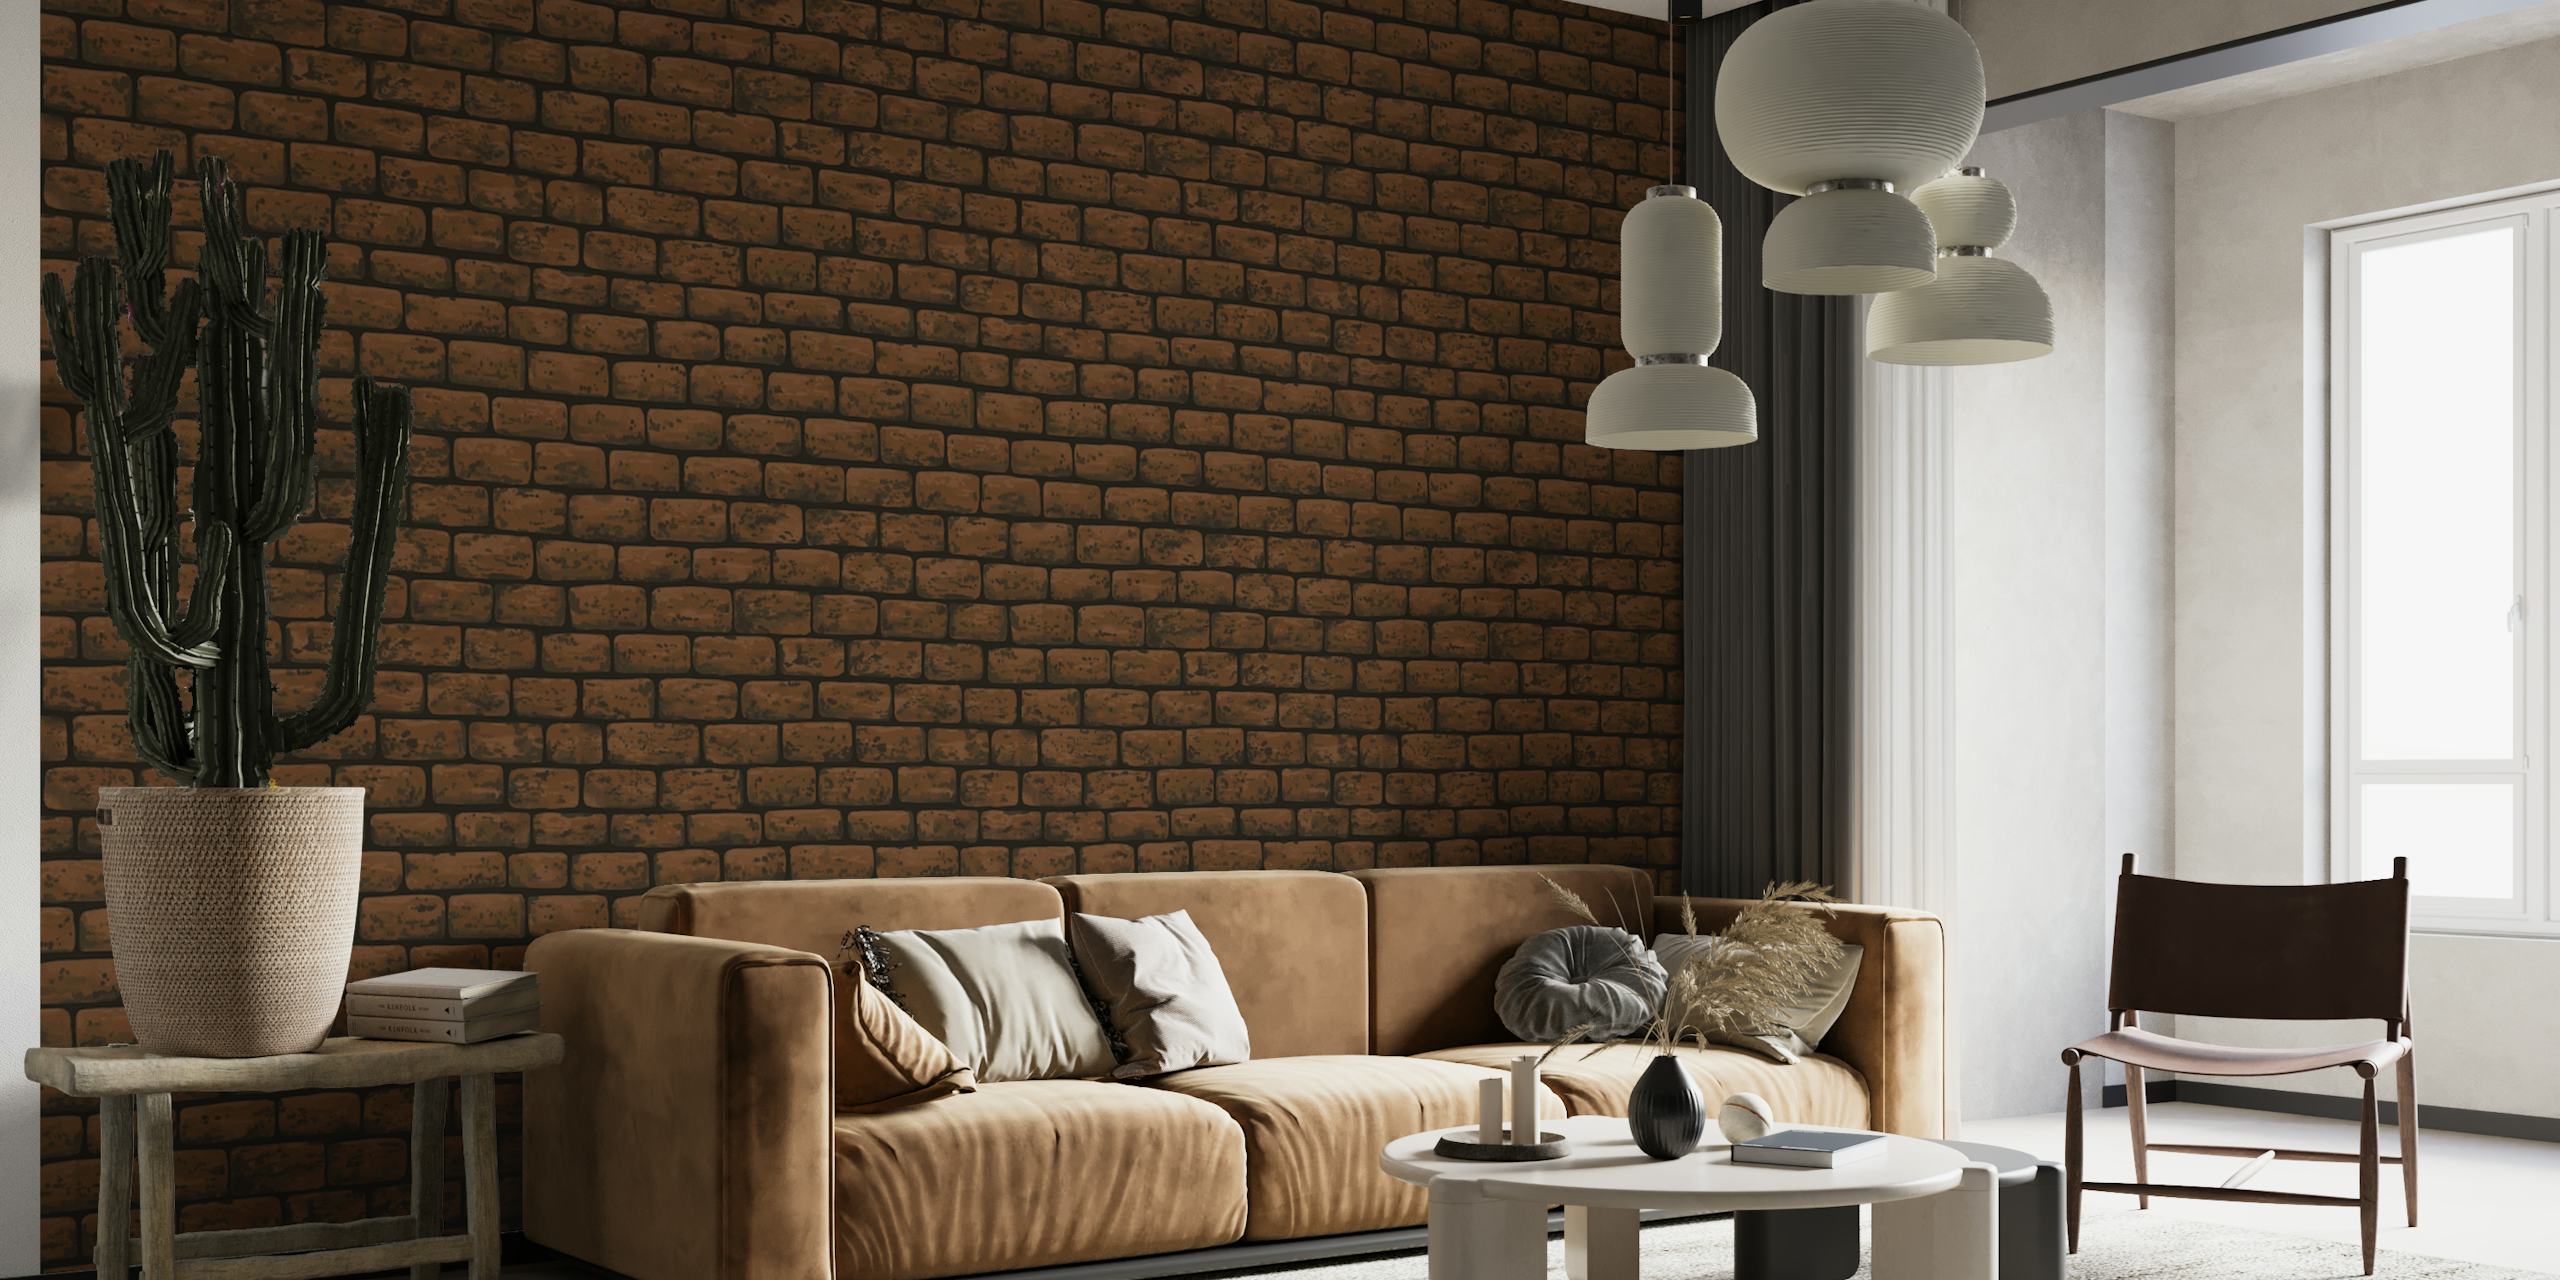 Strukturierte Wandtapete aus braunem Backstein für einen rustikalen und industriellen Innenraum-Look